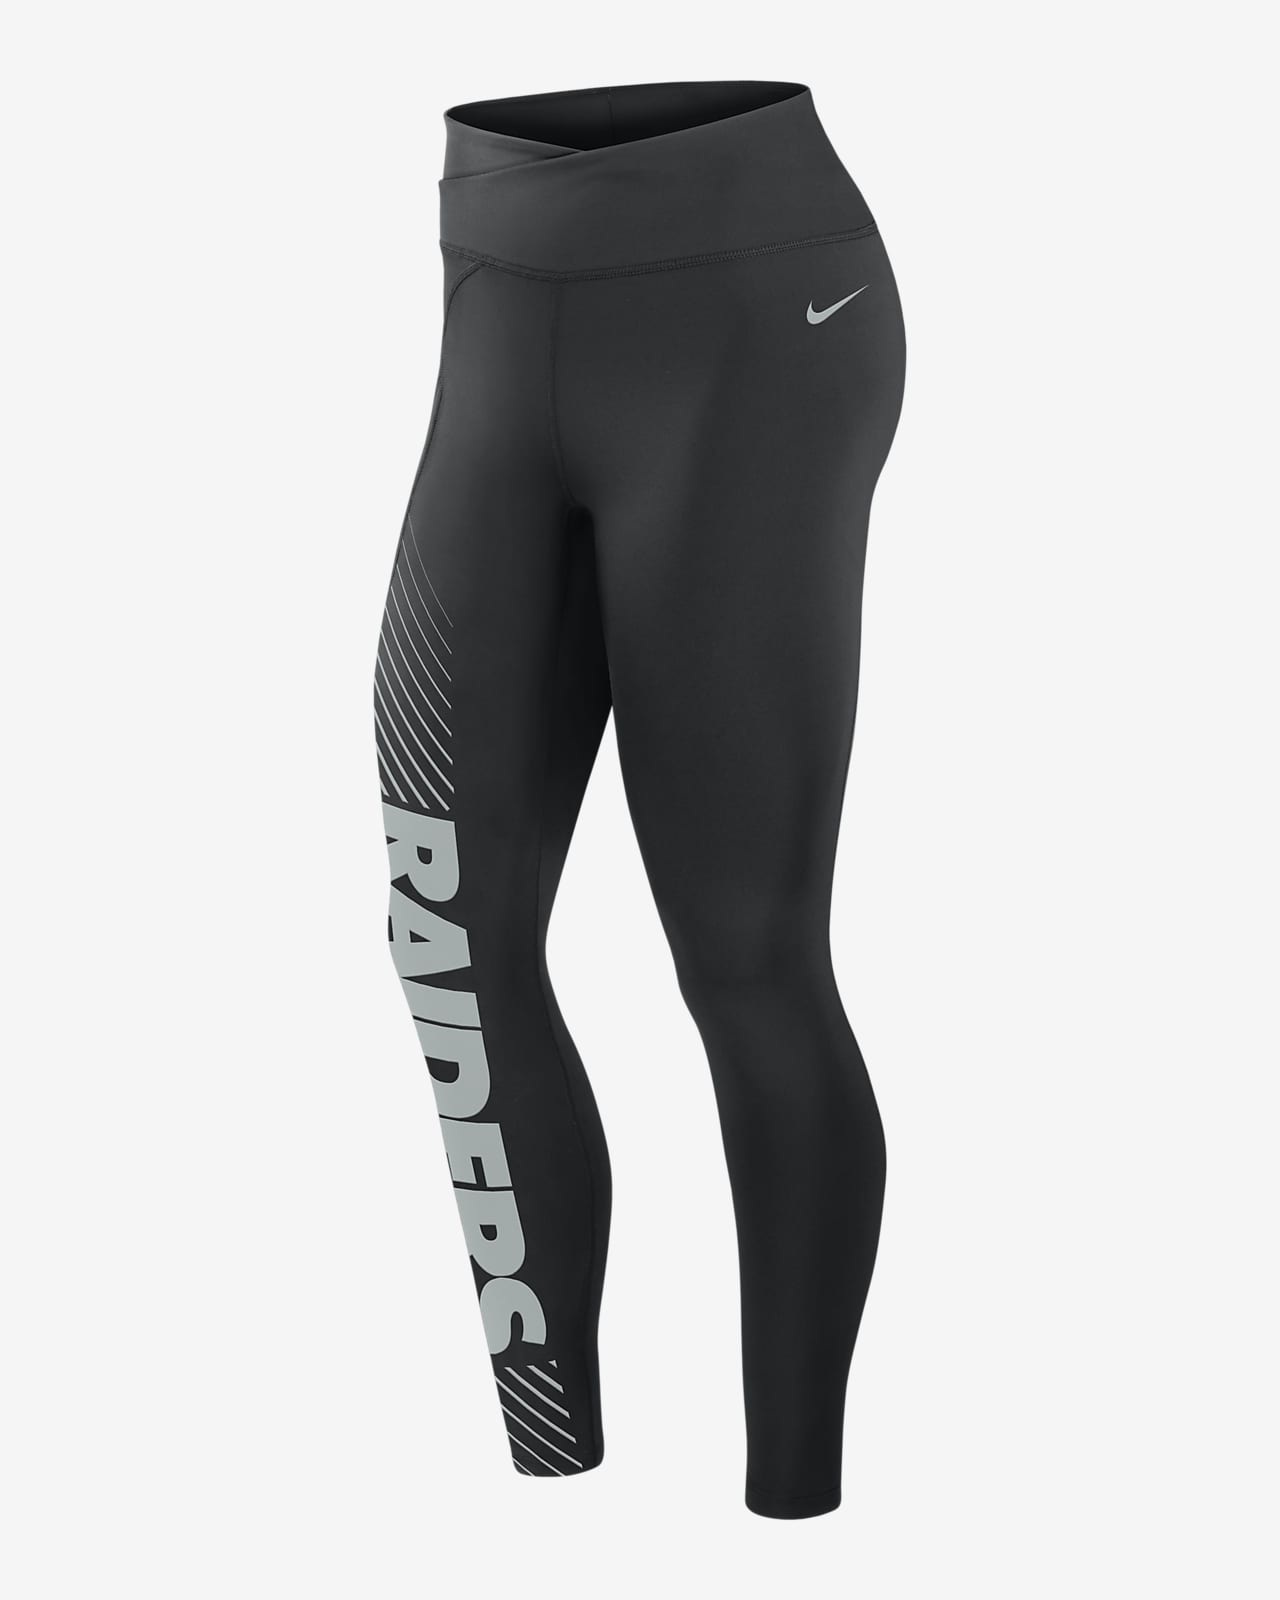 Nike Womens Leggings Track Pants Black Size L Lot 2 - Shop Linda's Stuff